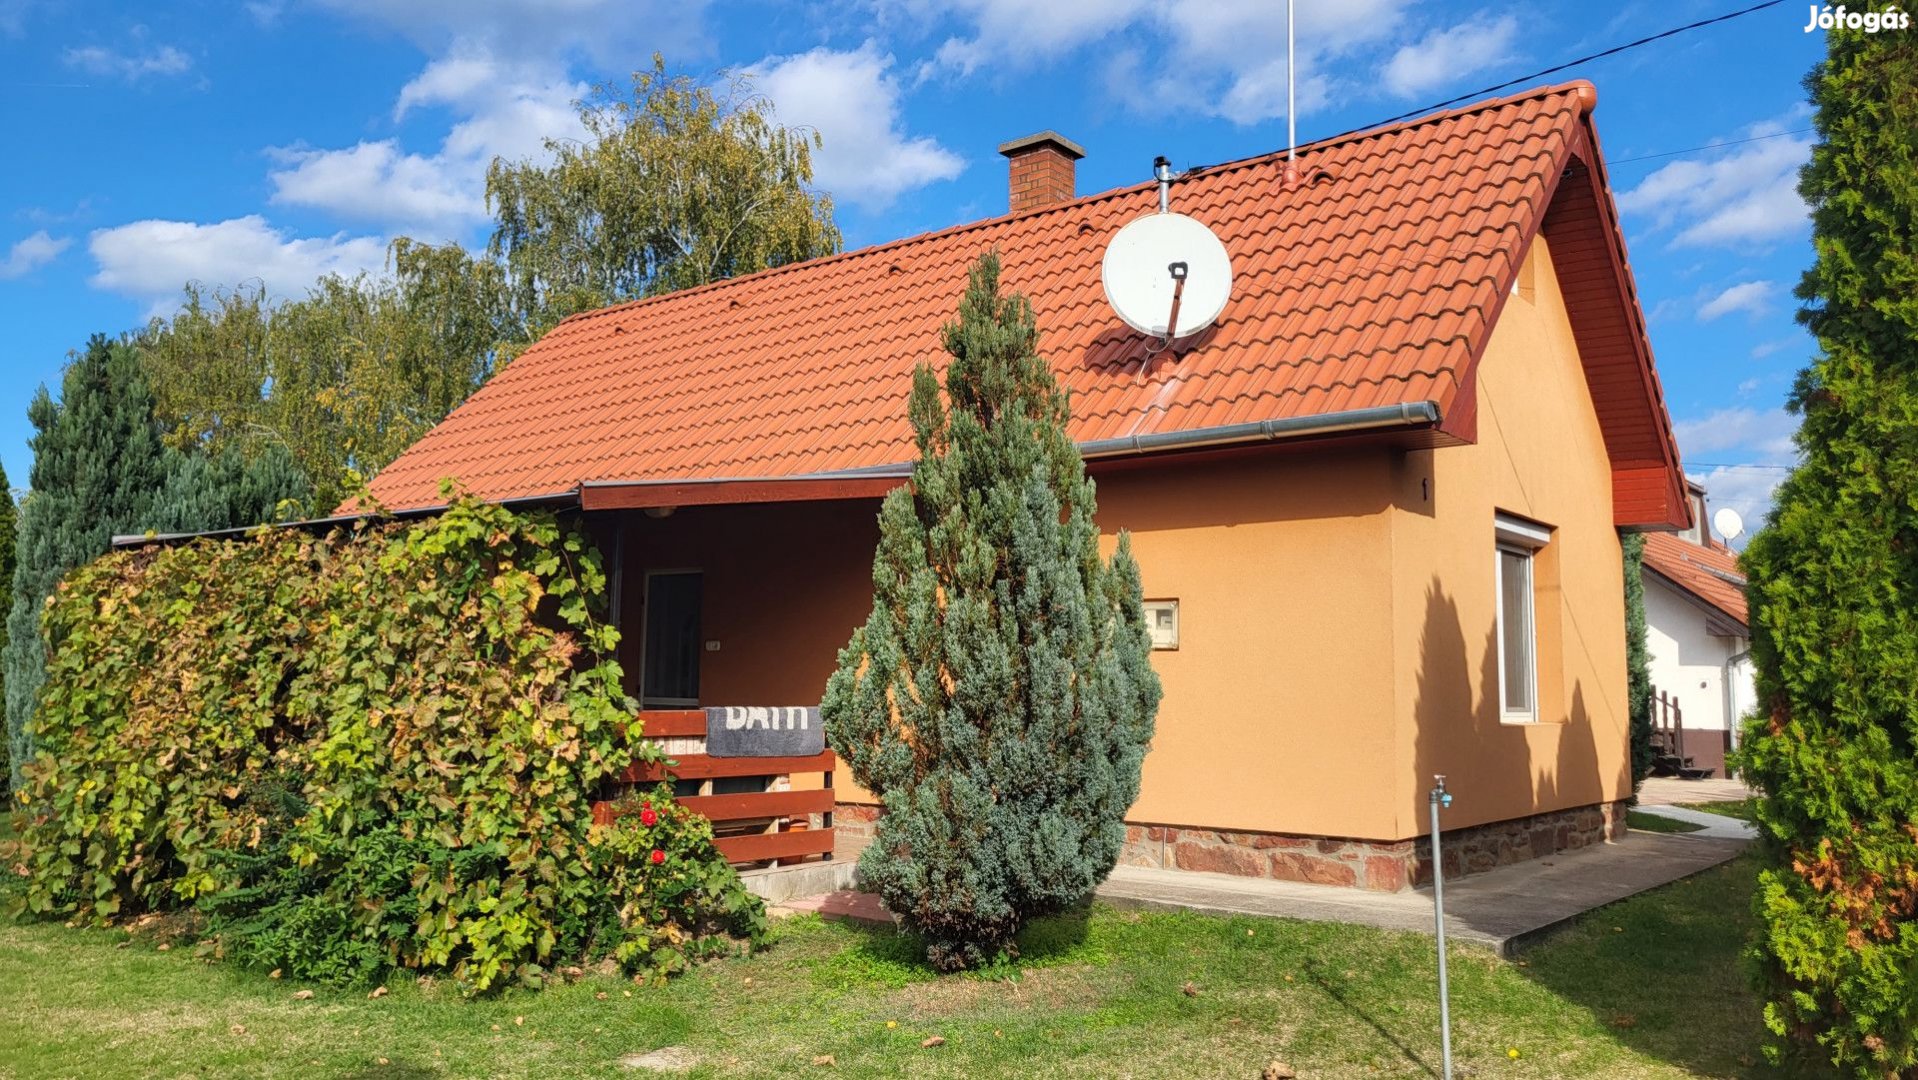 Balaton közeli kis településen családi ház eladó!